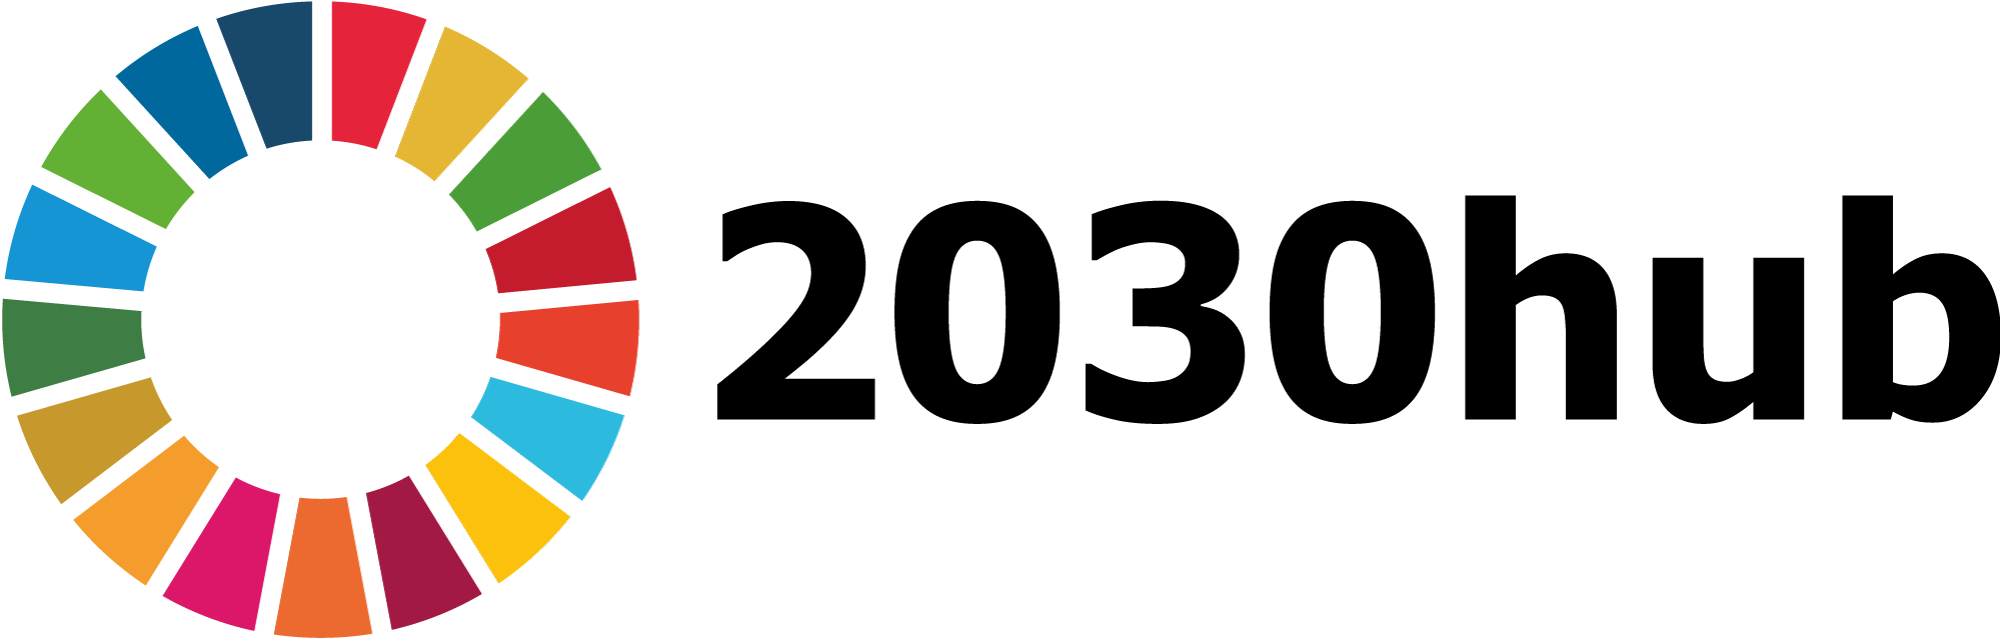 logo for 2030hub